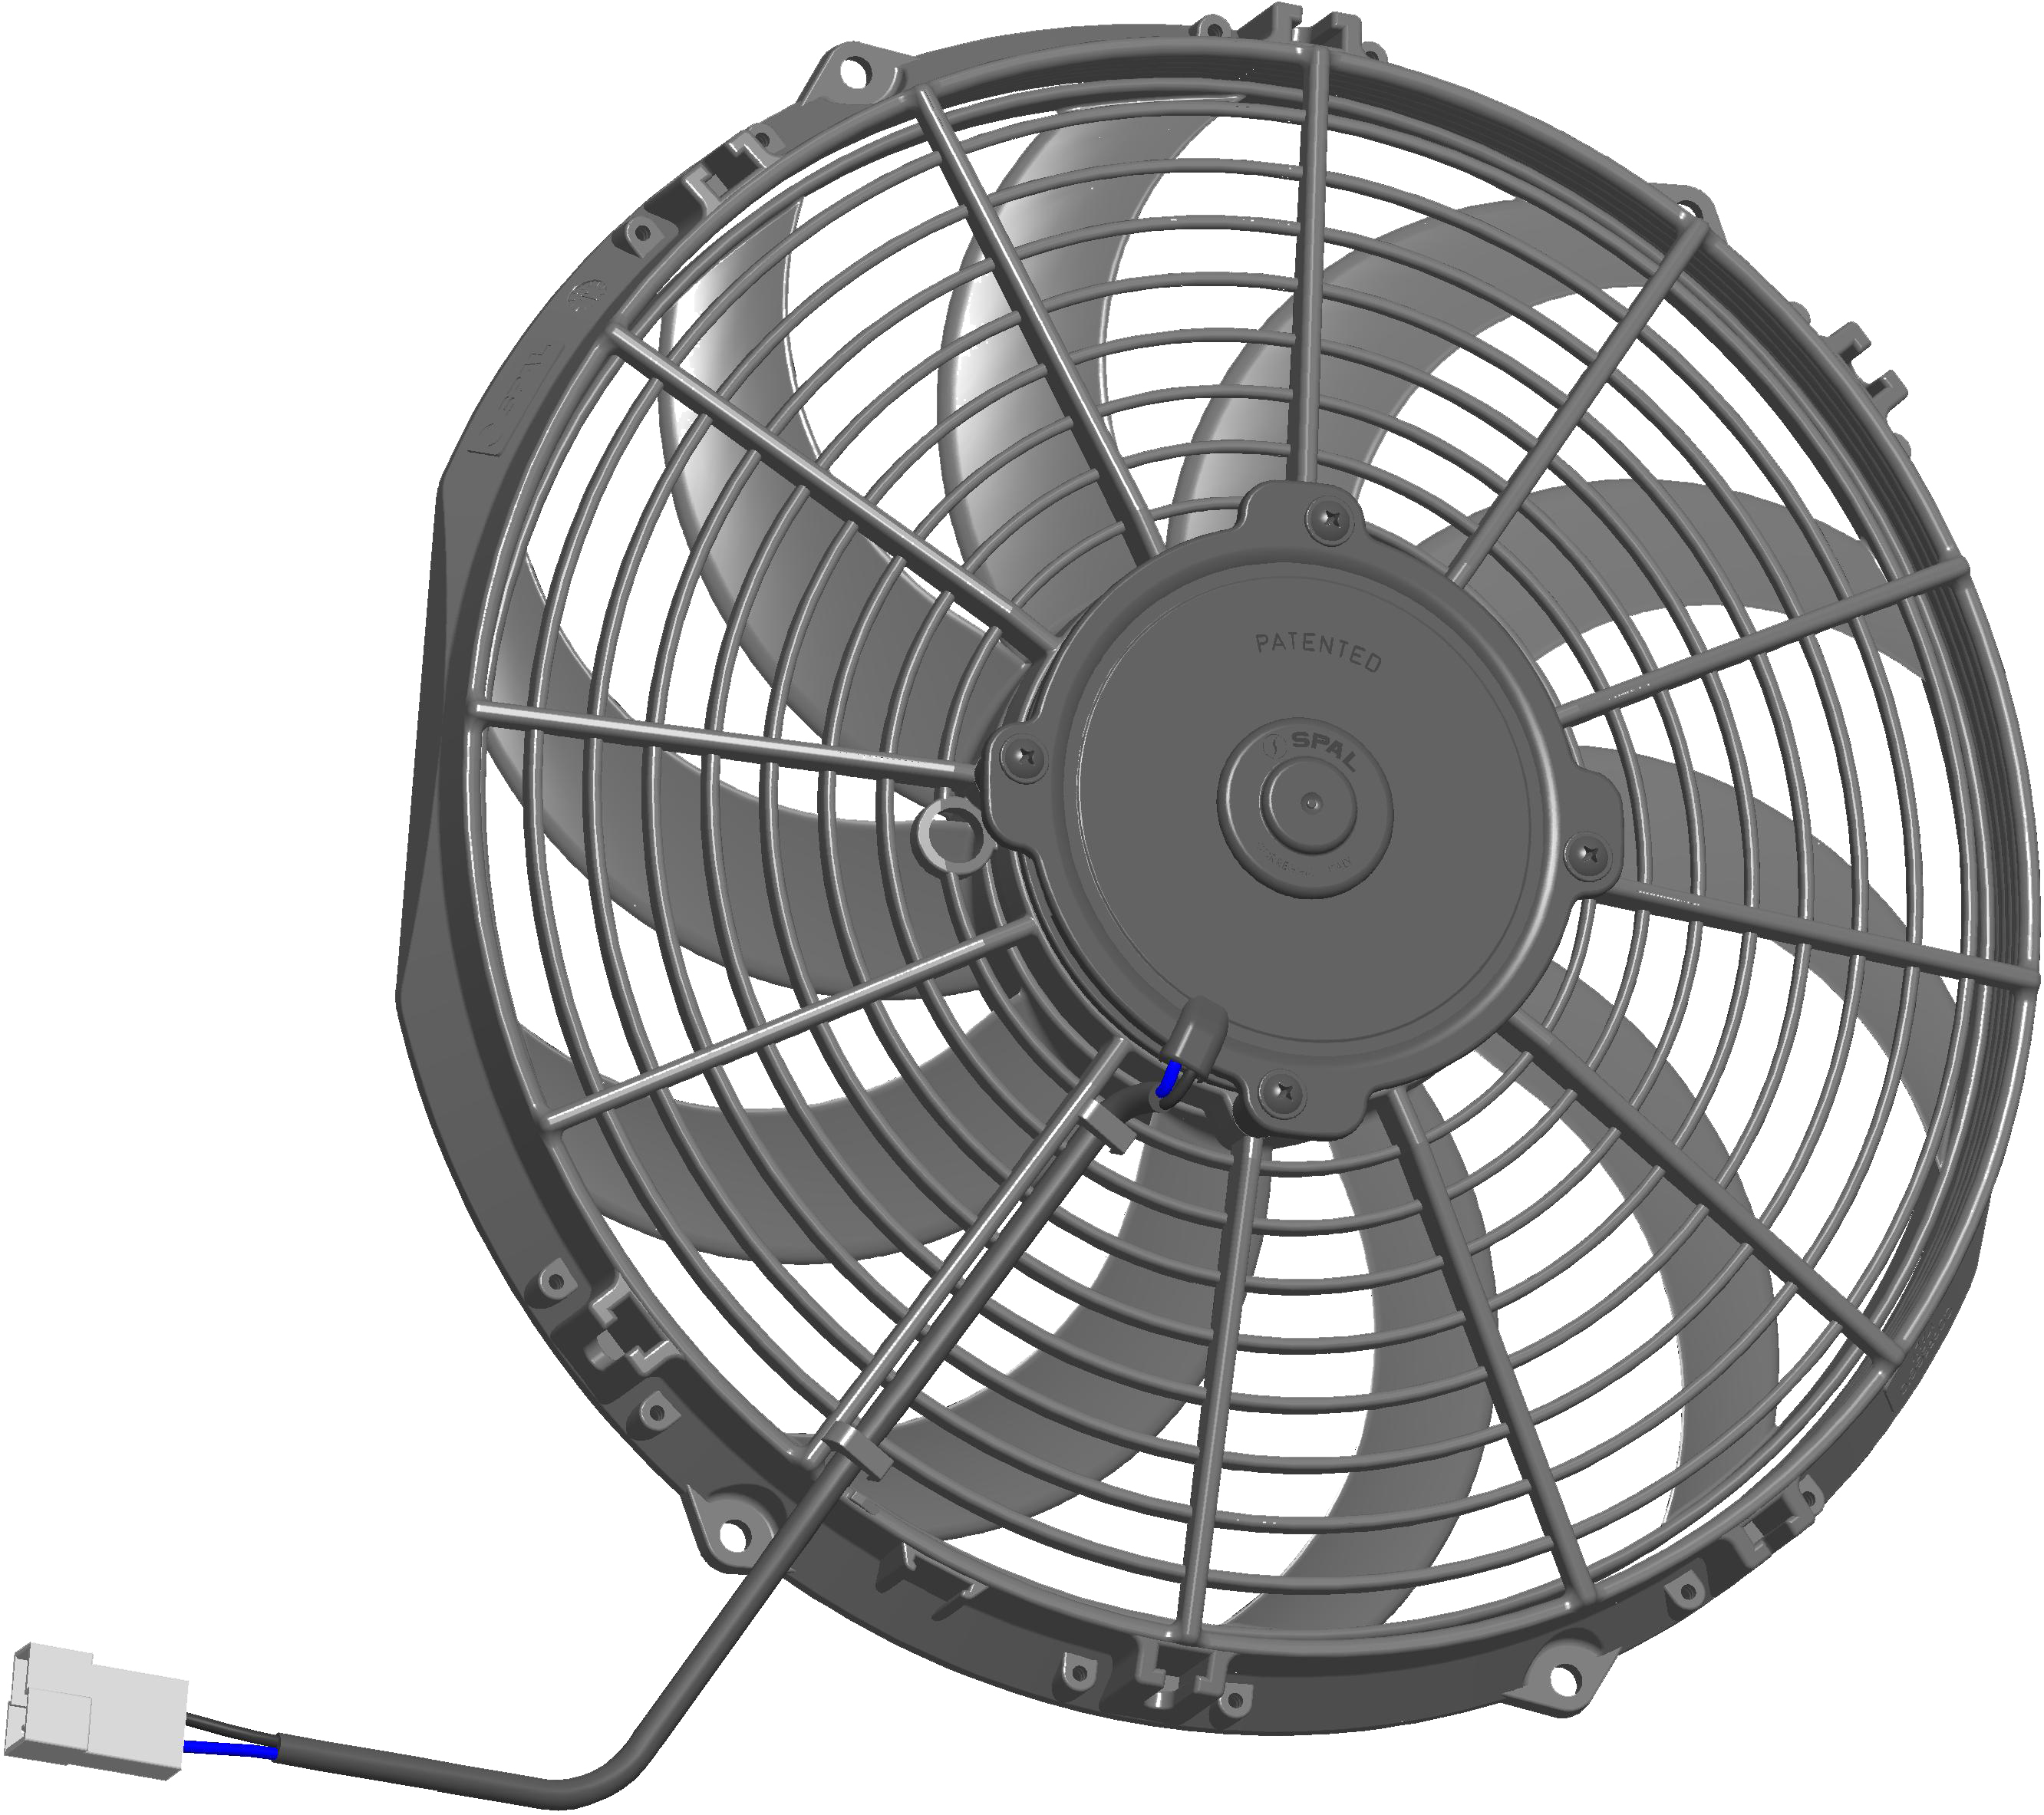 SPAL 12" (305mm) Cooling Fan VA10-BP50/C-61A 24V BT MC (24v / 1392 cfm / Pulling)